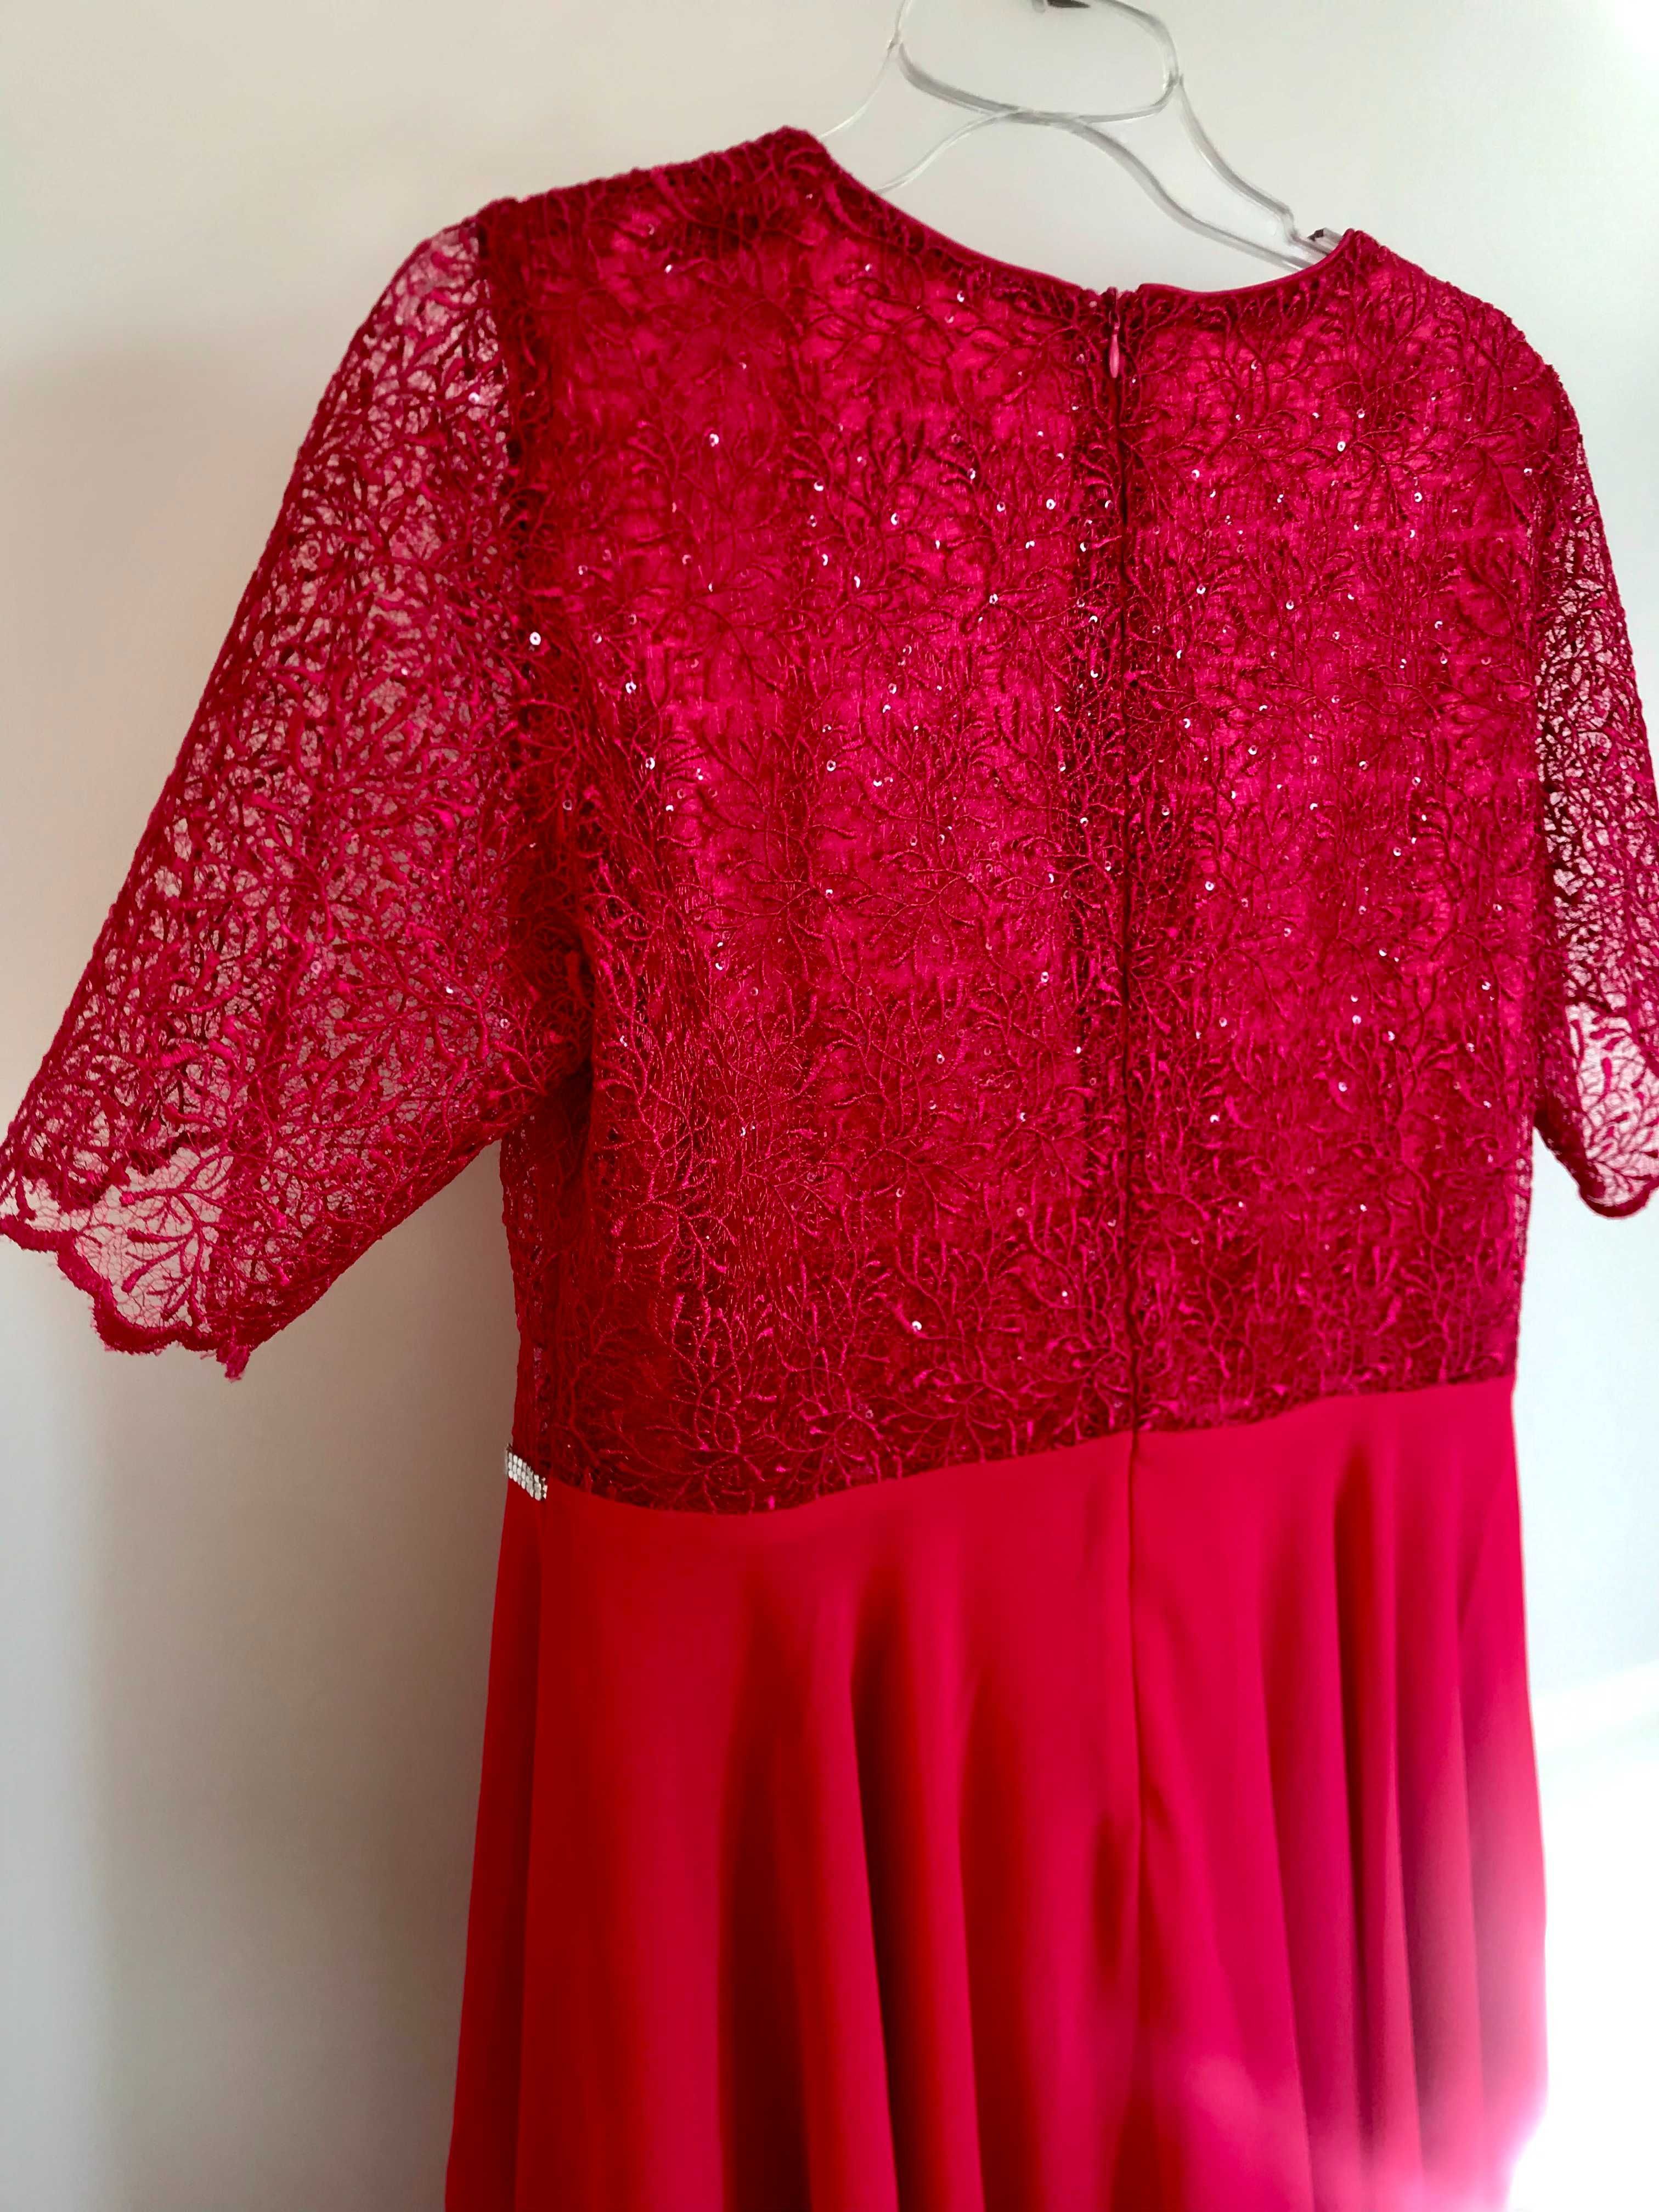 malinowa sukienka suknia na wesele sylwestra L XL 40 koronka czerwona